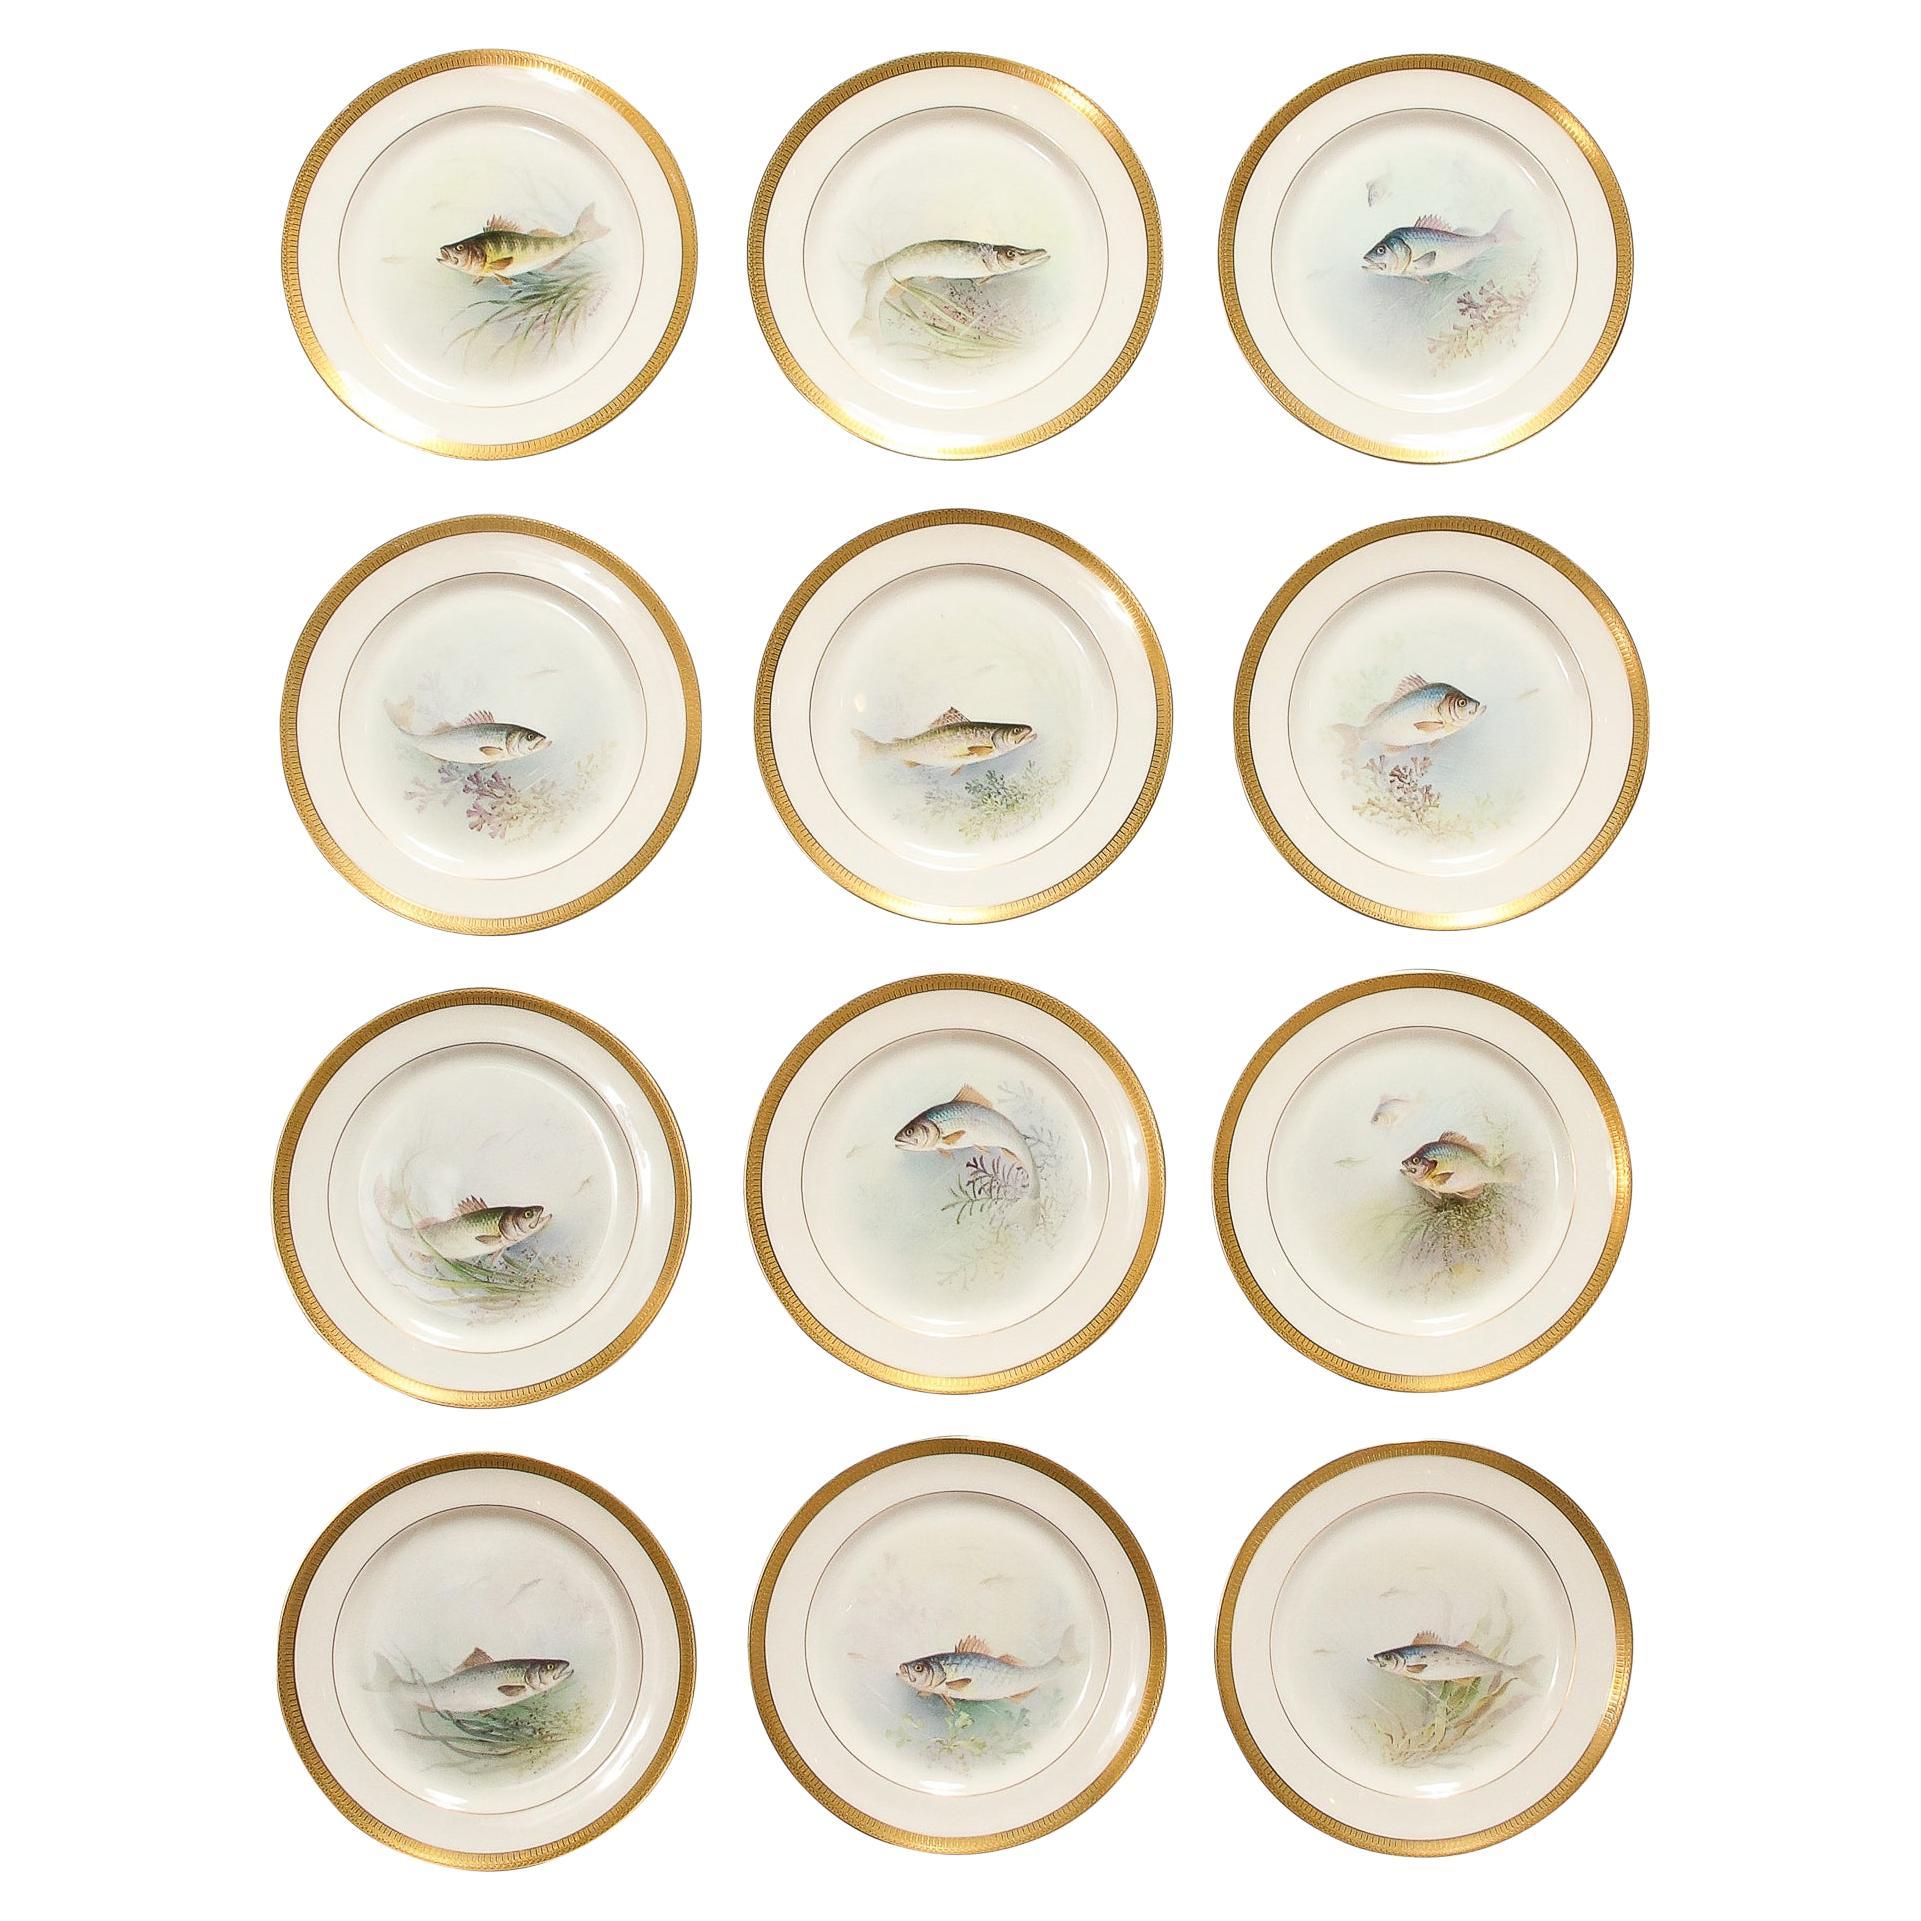 Ce remarquable ensemble de douze assiettes en porcelaine Lenox peintes à la main, signées William Morley et représentant des poissons, provient des États-Unis, vers 1900. Nature : une bordure dorée avec des motifs naturels et géométriques répétitifs